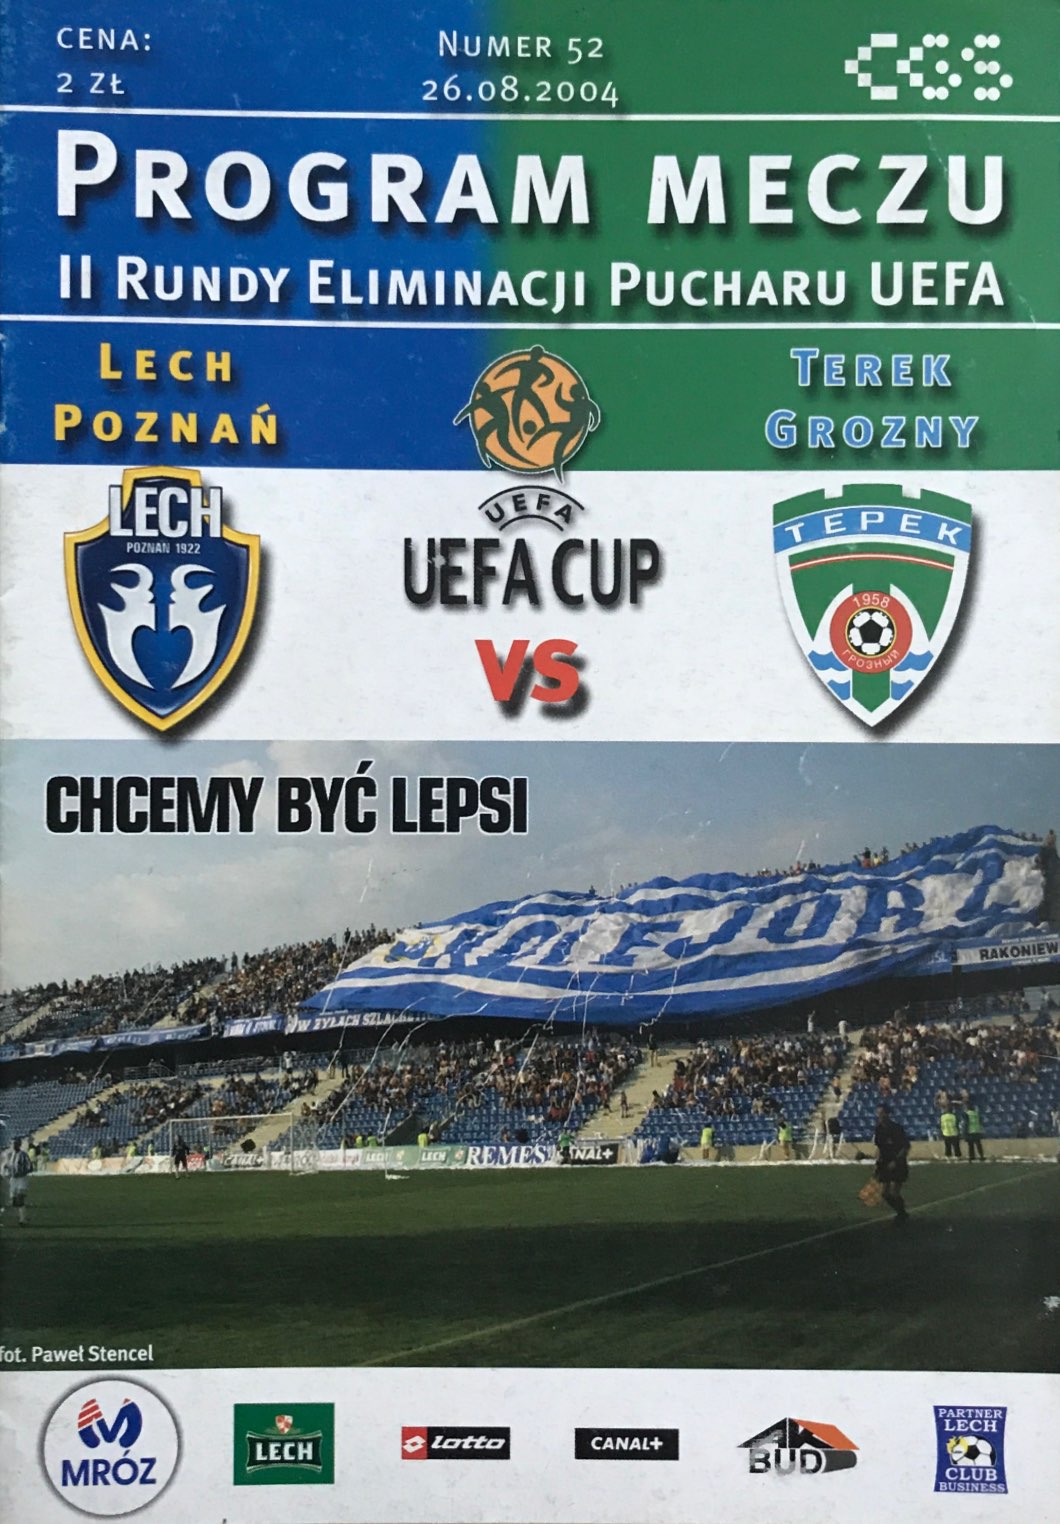 Program meczowy Lech Poznań - Terek Grozny 0:1 (26.08.2004)